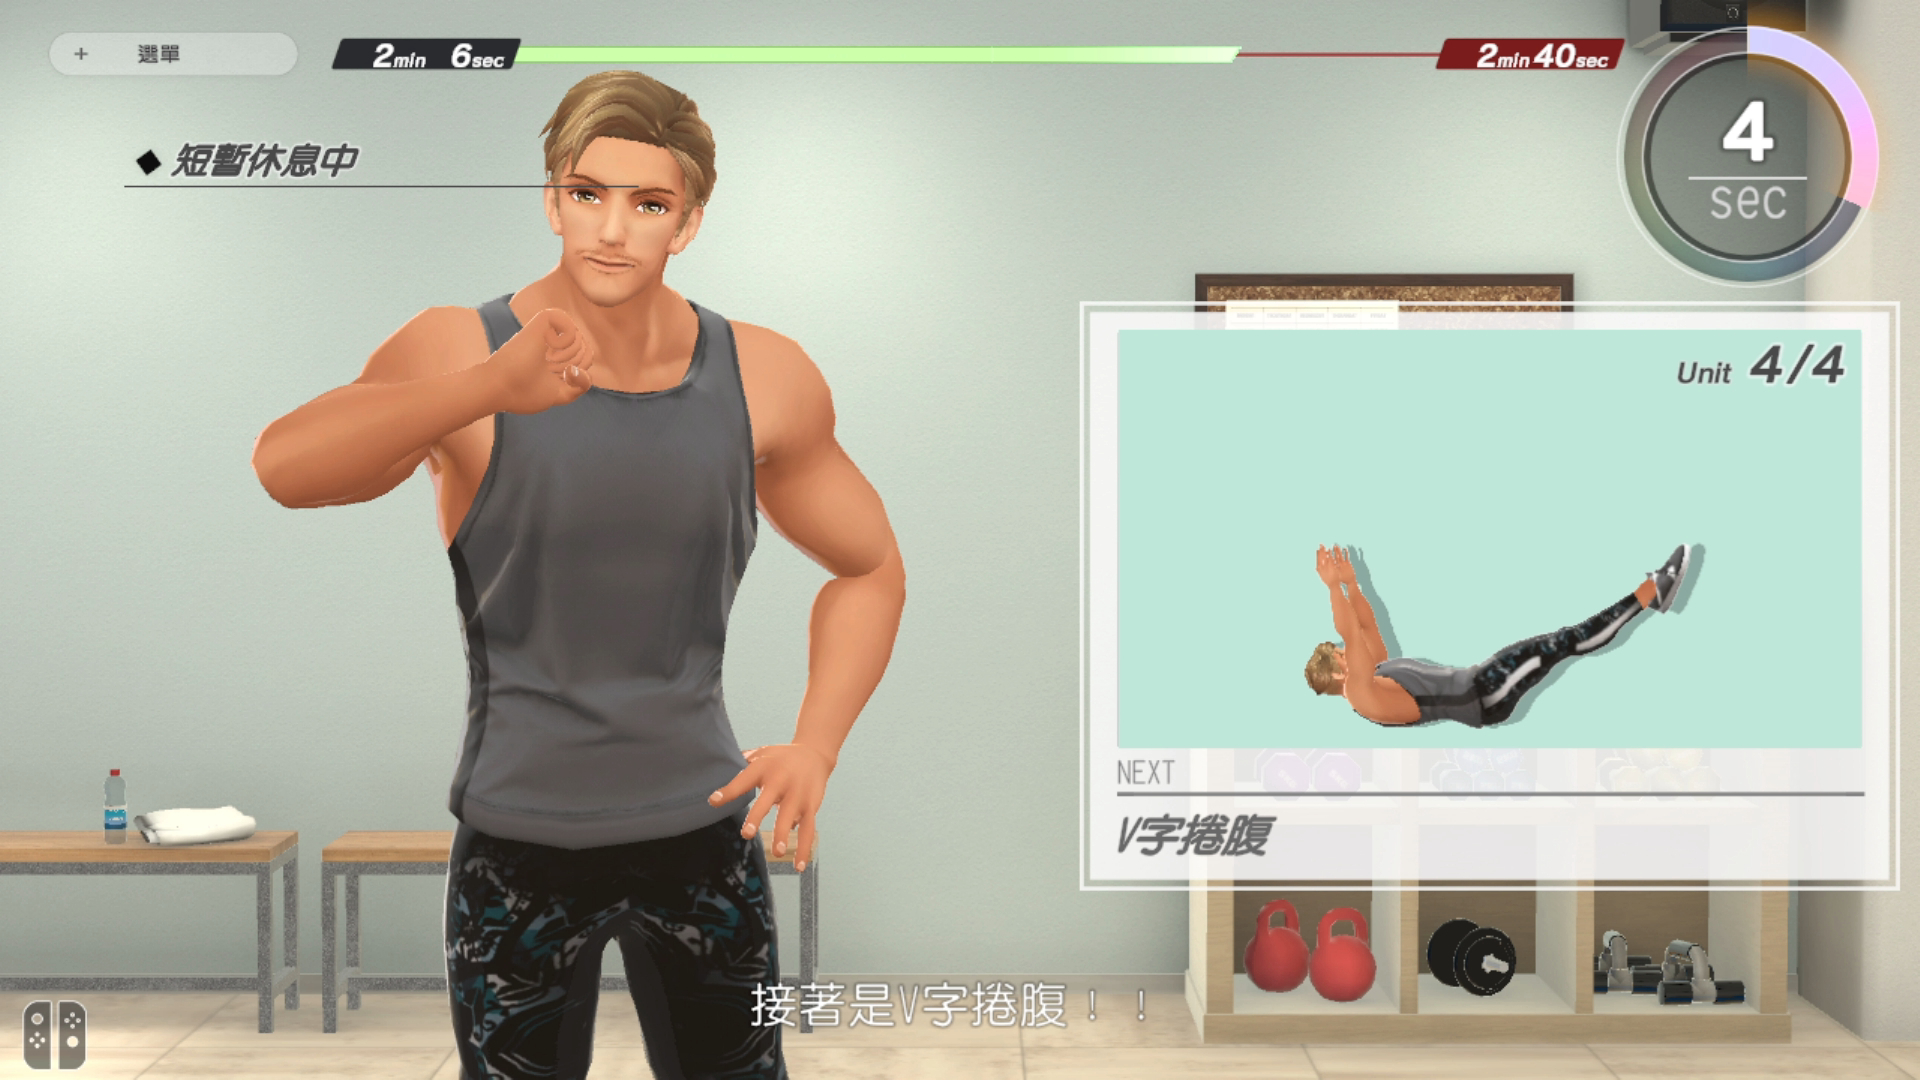 《吾家健身趣》专业教练影片版 DLC 开放下载 本篇数位版限期促销中